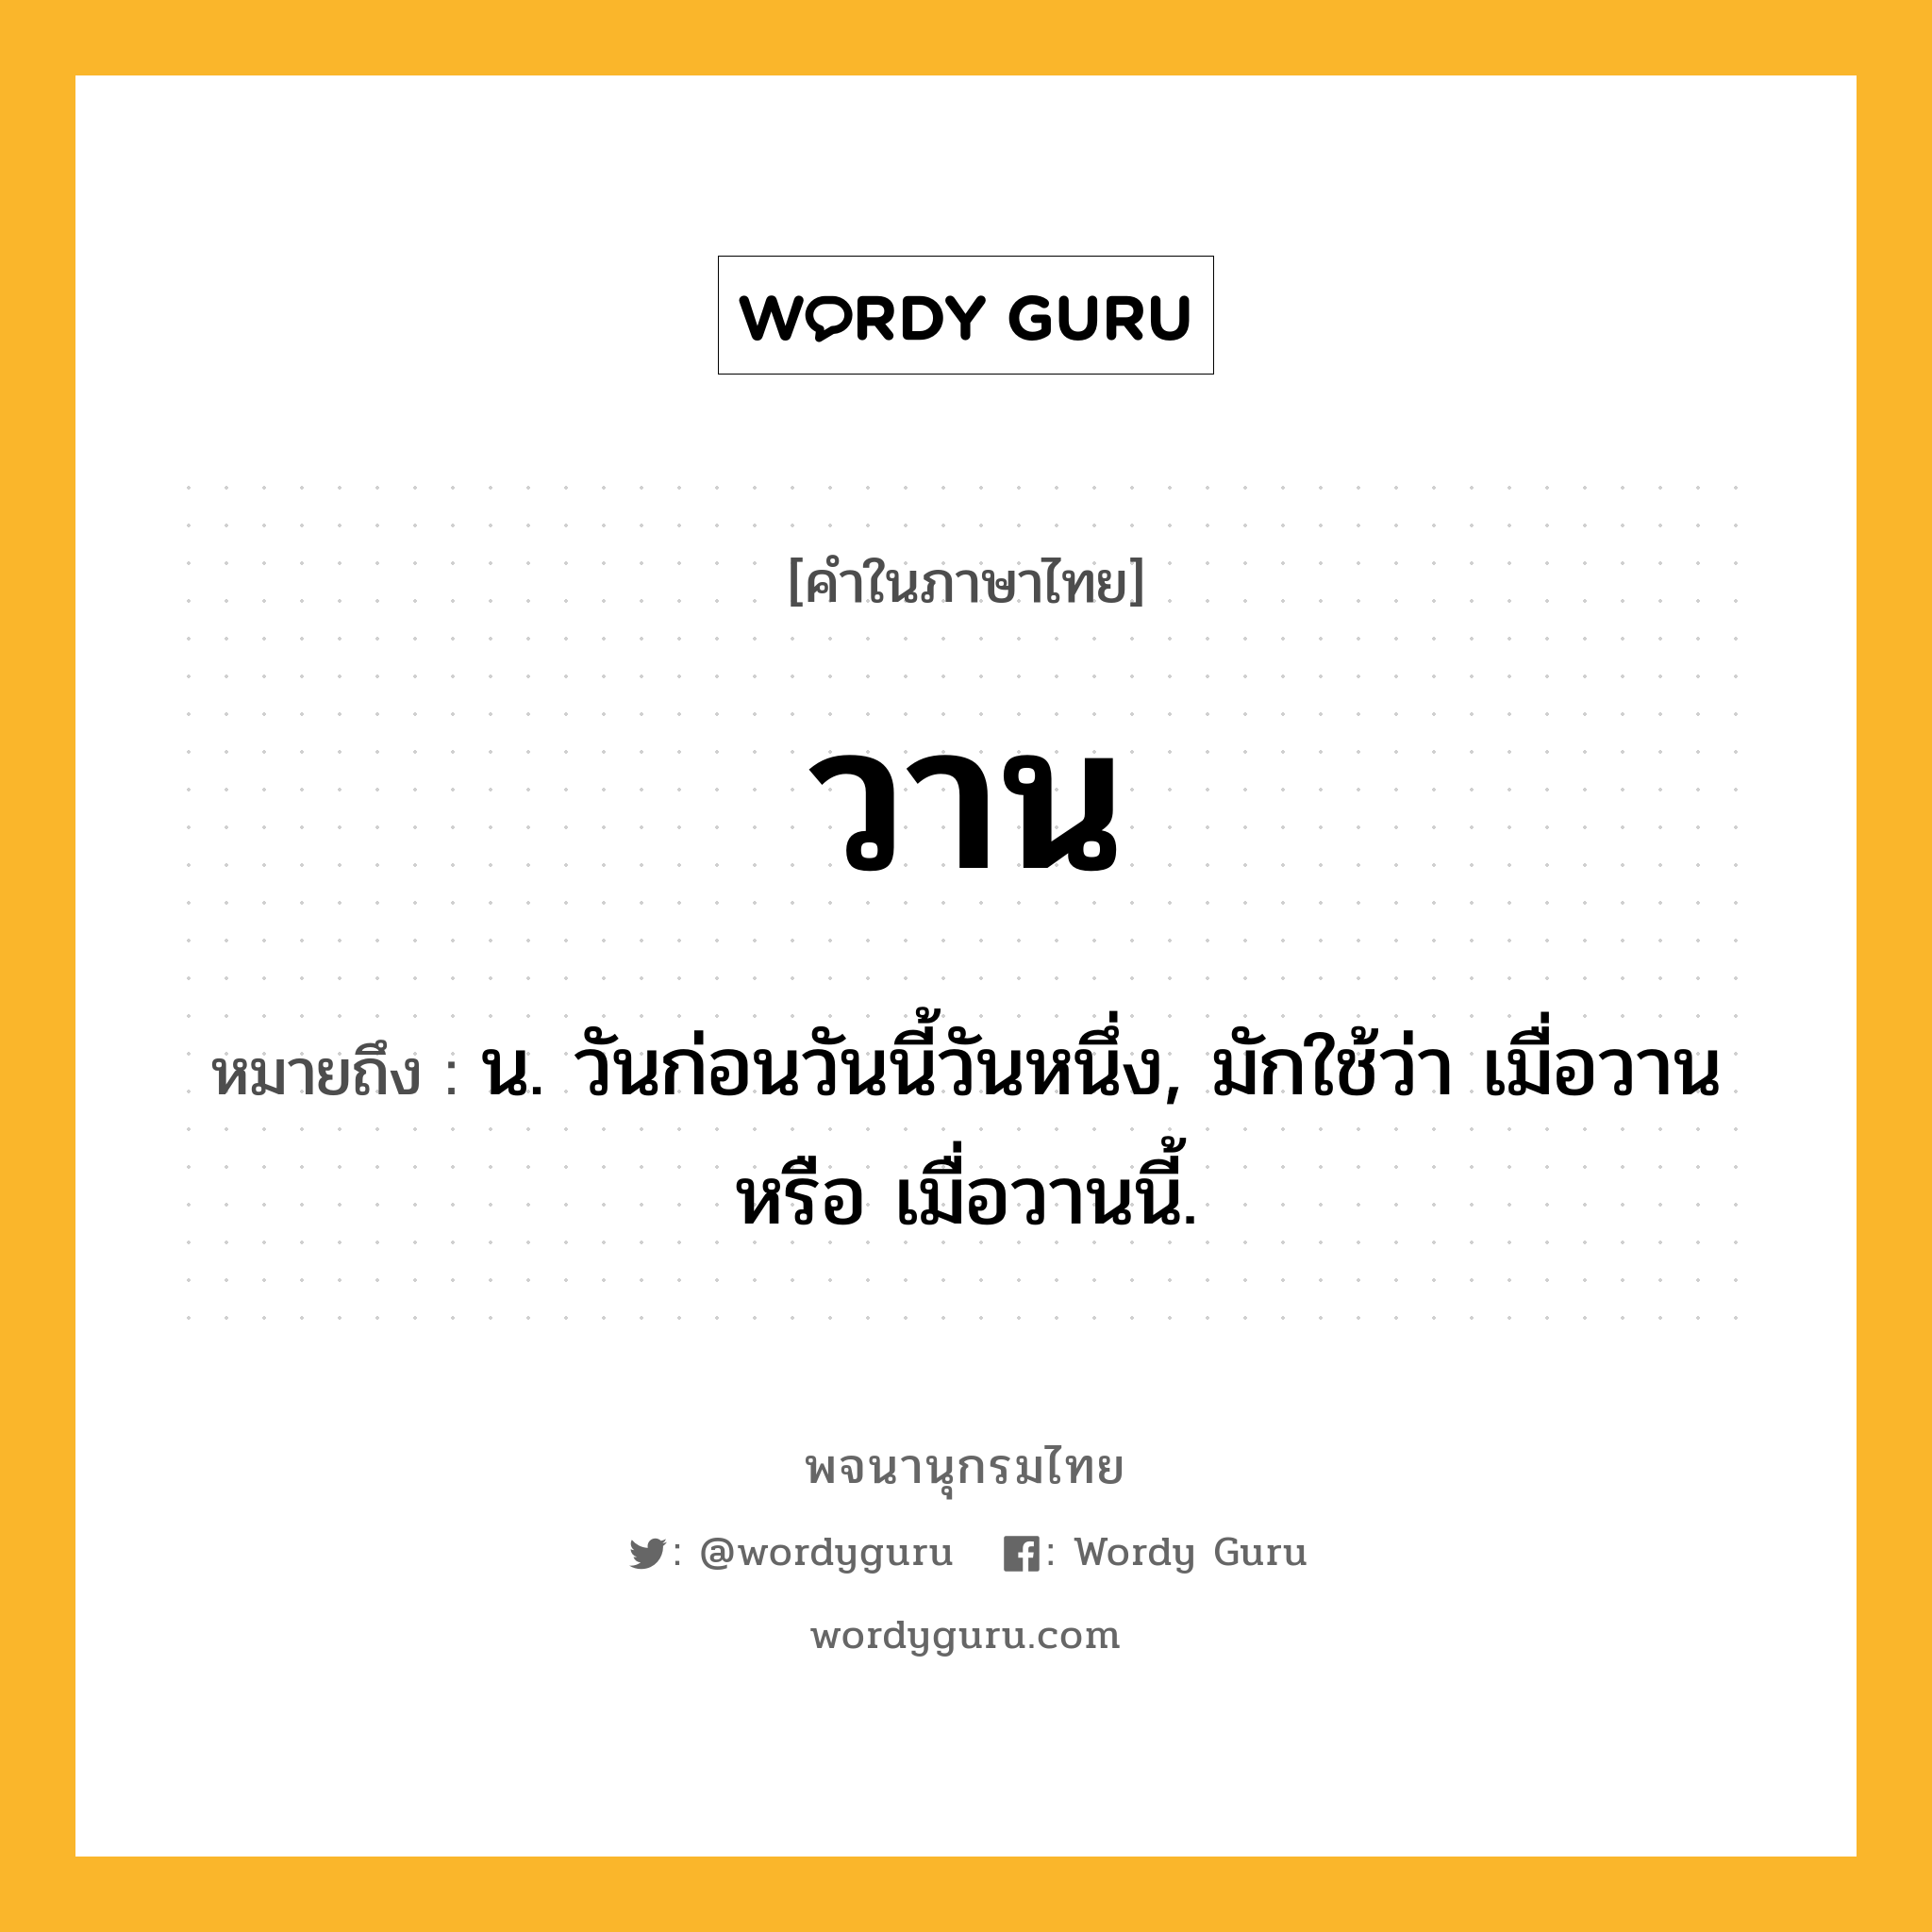 วาน หมายถึงอะไร?, คำในภาษาไทย วาน หมายถึง น. วันก่อนวันนี้วันหนึ่ง, มักใช้ว่า เมื่อวาน หรือ เมื่อวานนี้.